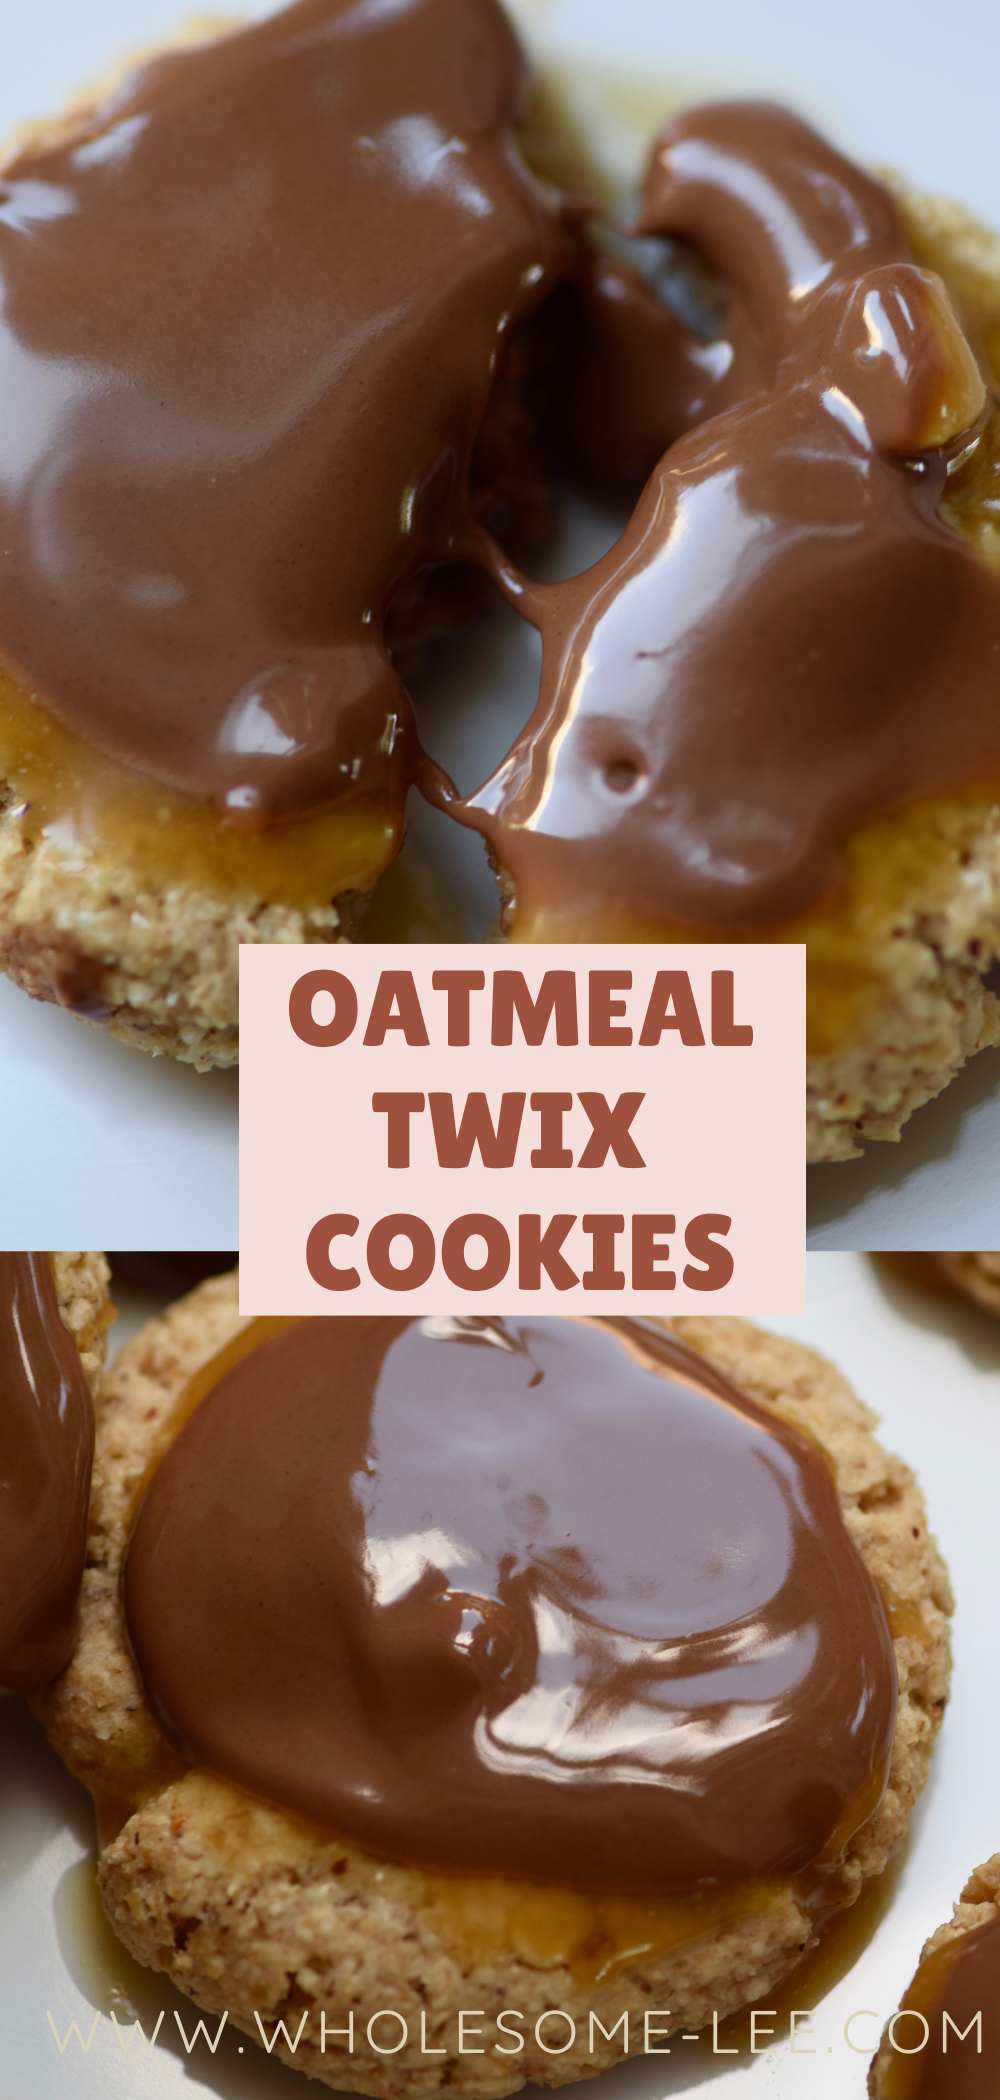 Oatmeal twix cookies